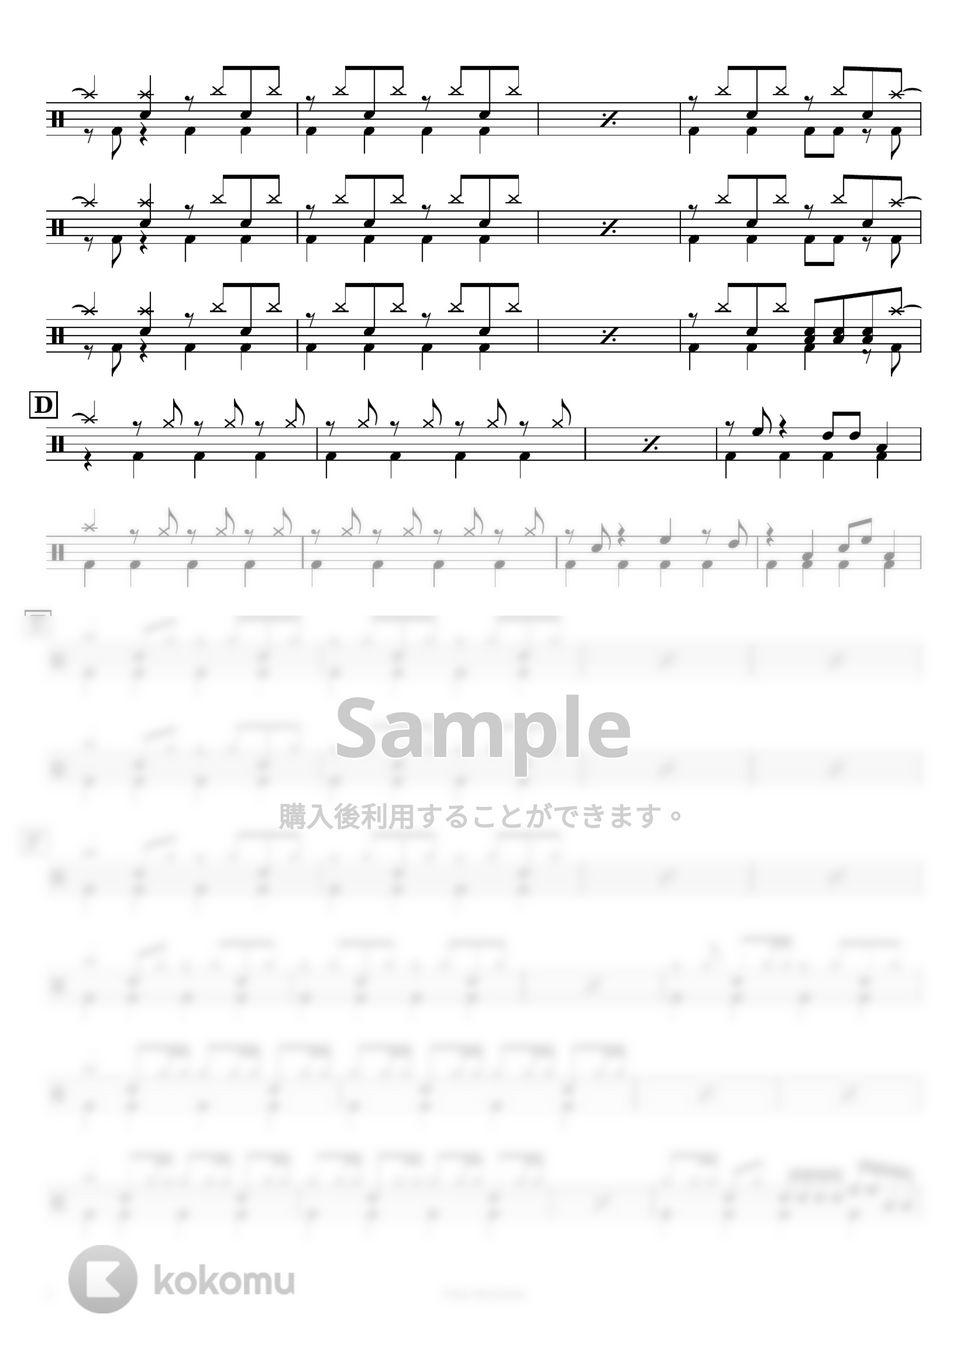 Orangestar - 【ドラム譜】アスノヨゾラ哨戒班【キミノヨゾラ哨戒班アレンジ】 by Taiki Mizumoto